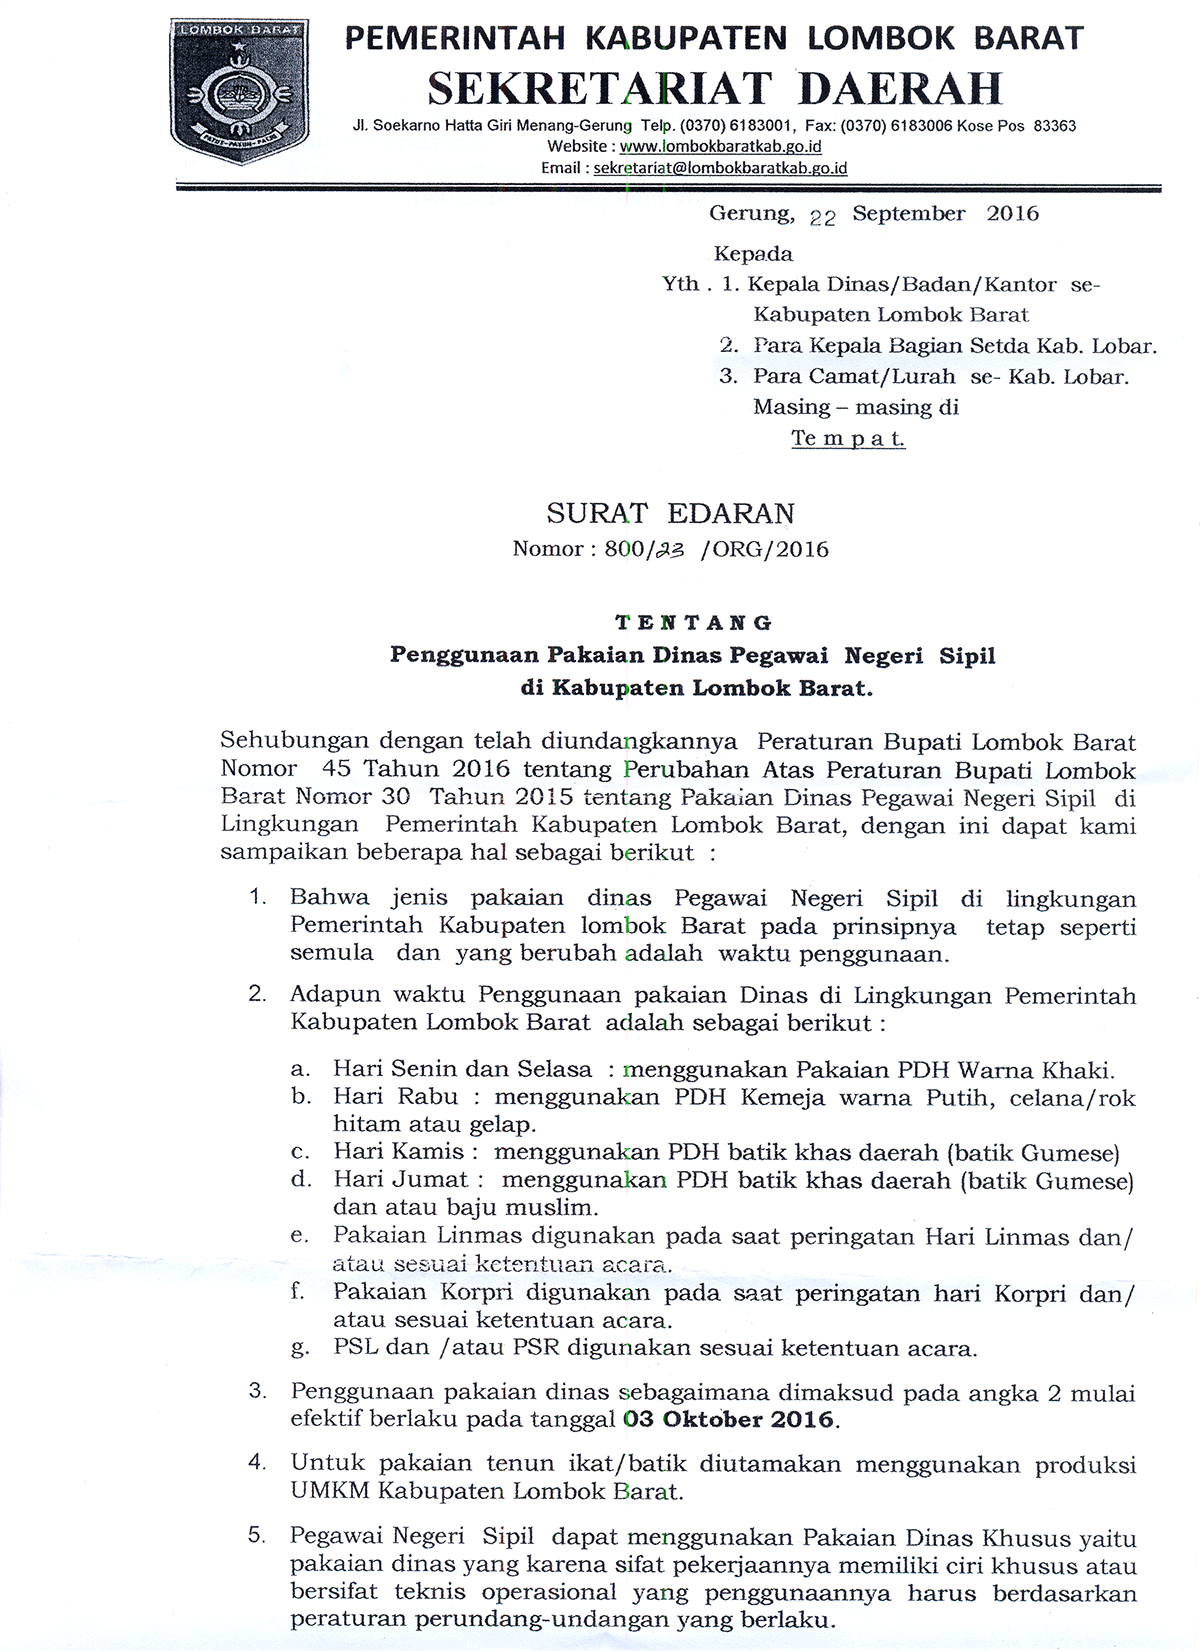 Surat Edaran Tentang Penggunaan Pakaian Dinas Pns Di Kabupaten Lombok Barat Kabupaten Lombok Barat